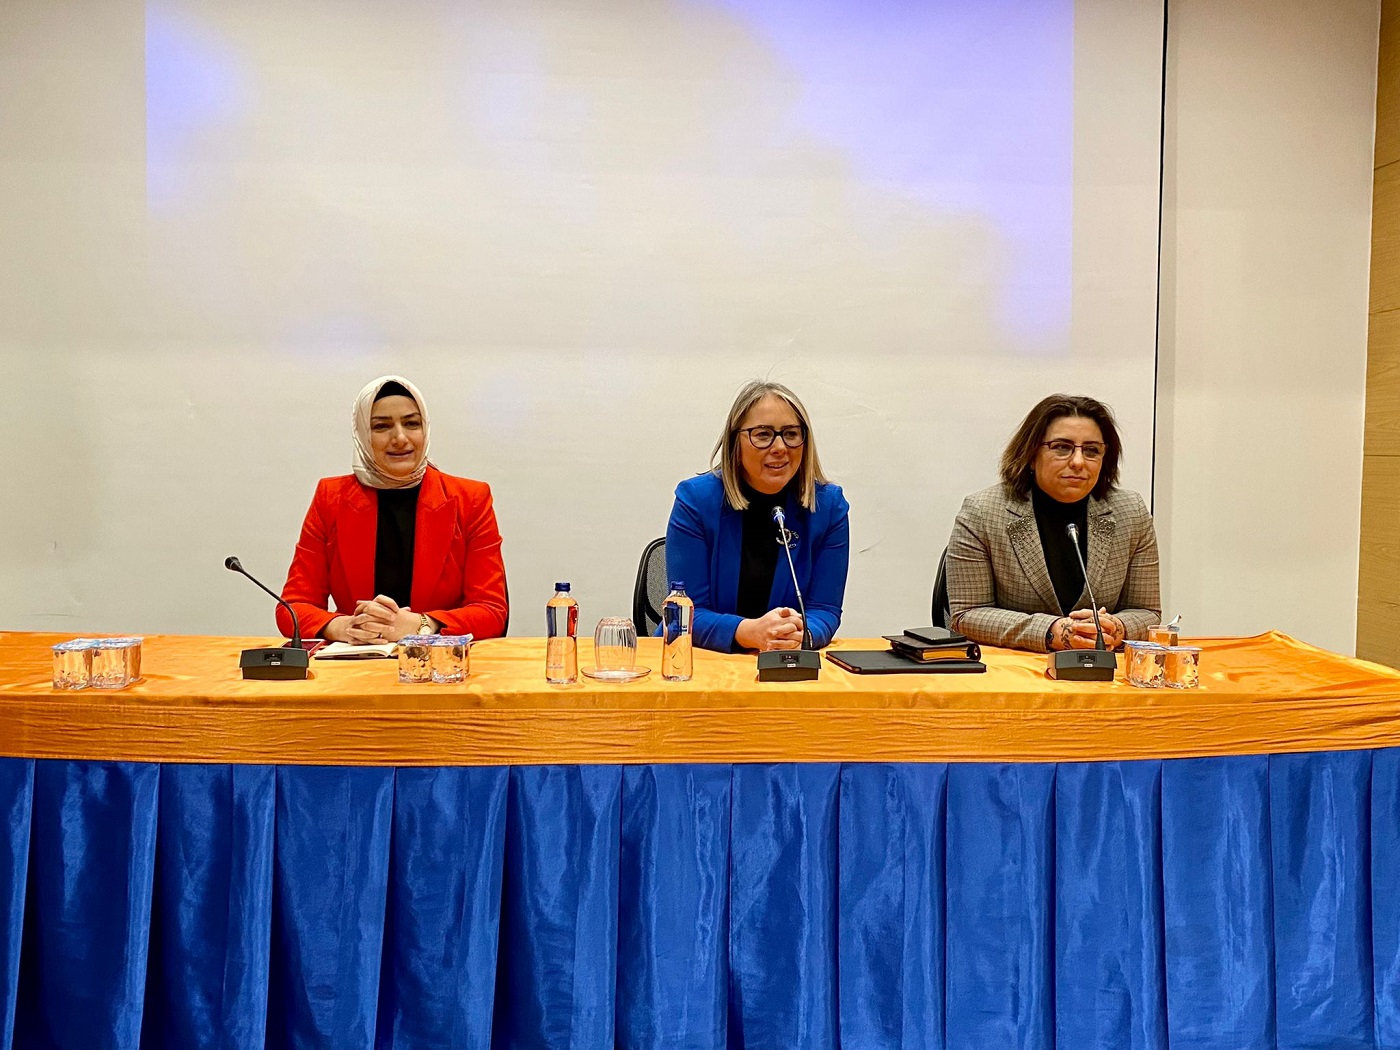 Dünyaca tanınmış Demir’den AK Parti İzmir Kadın Kolları ile ‘Kooperatifçilik’ söyleşisi 